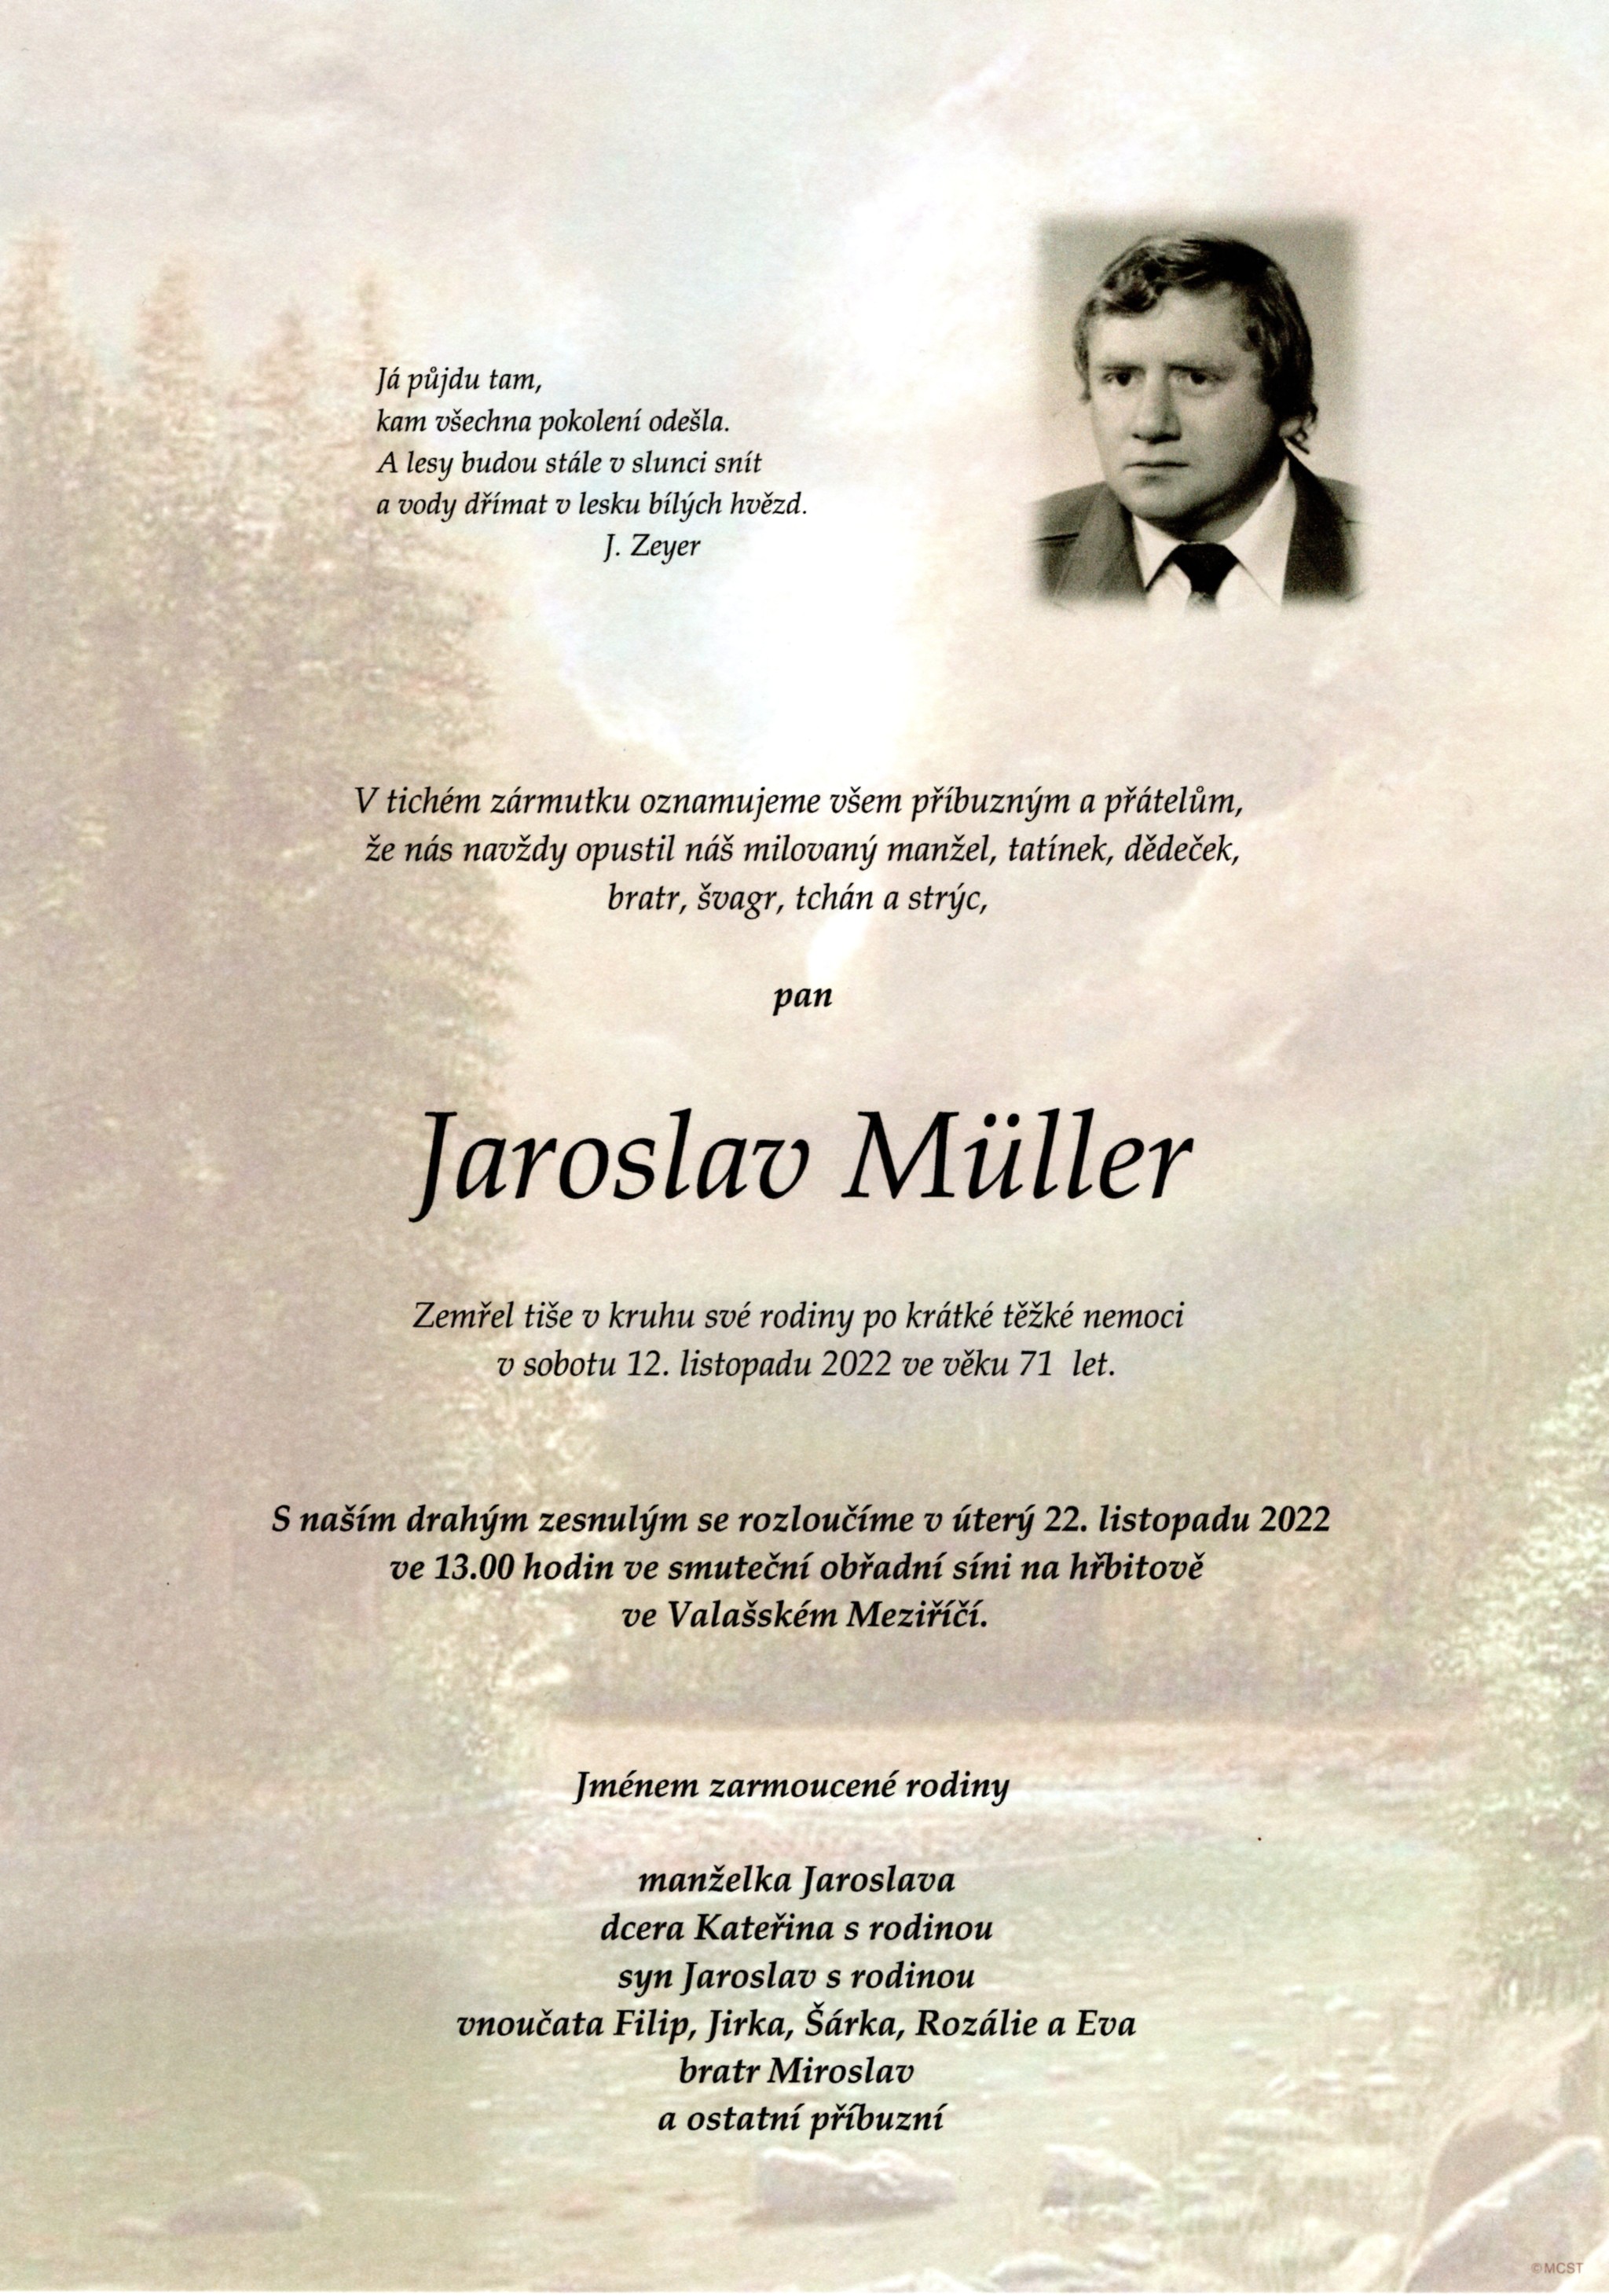 Jaroslav Müller